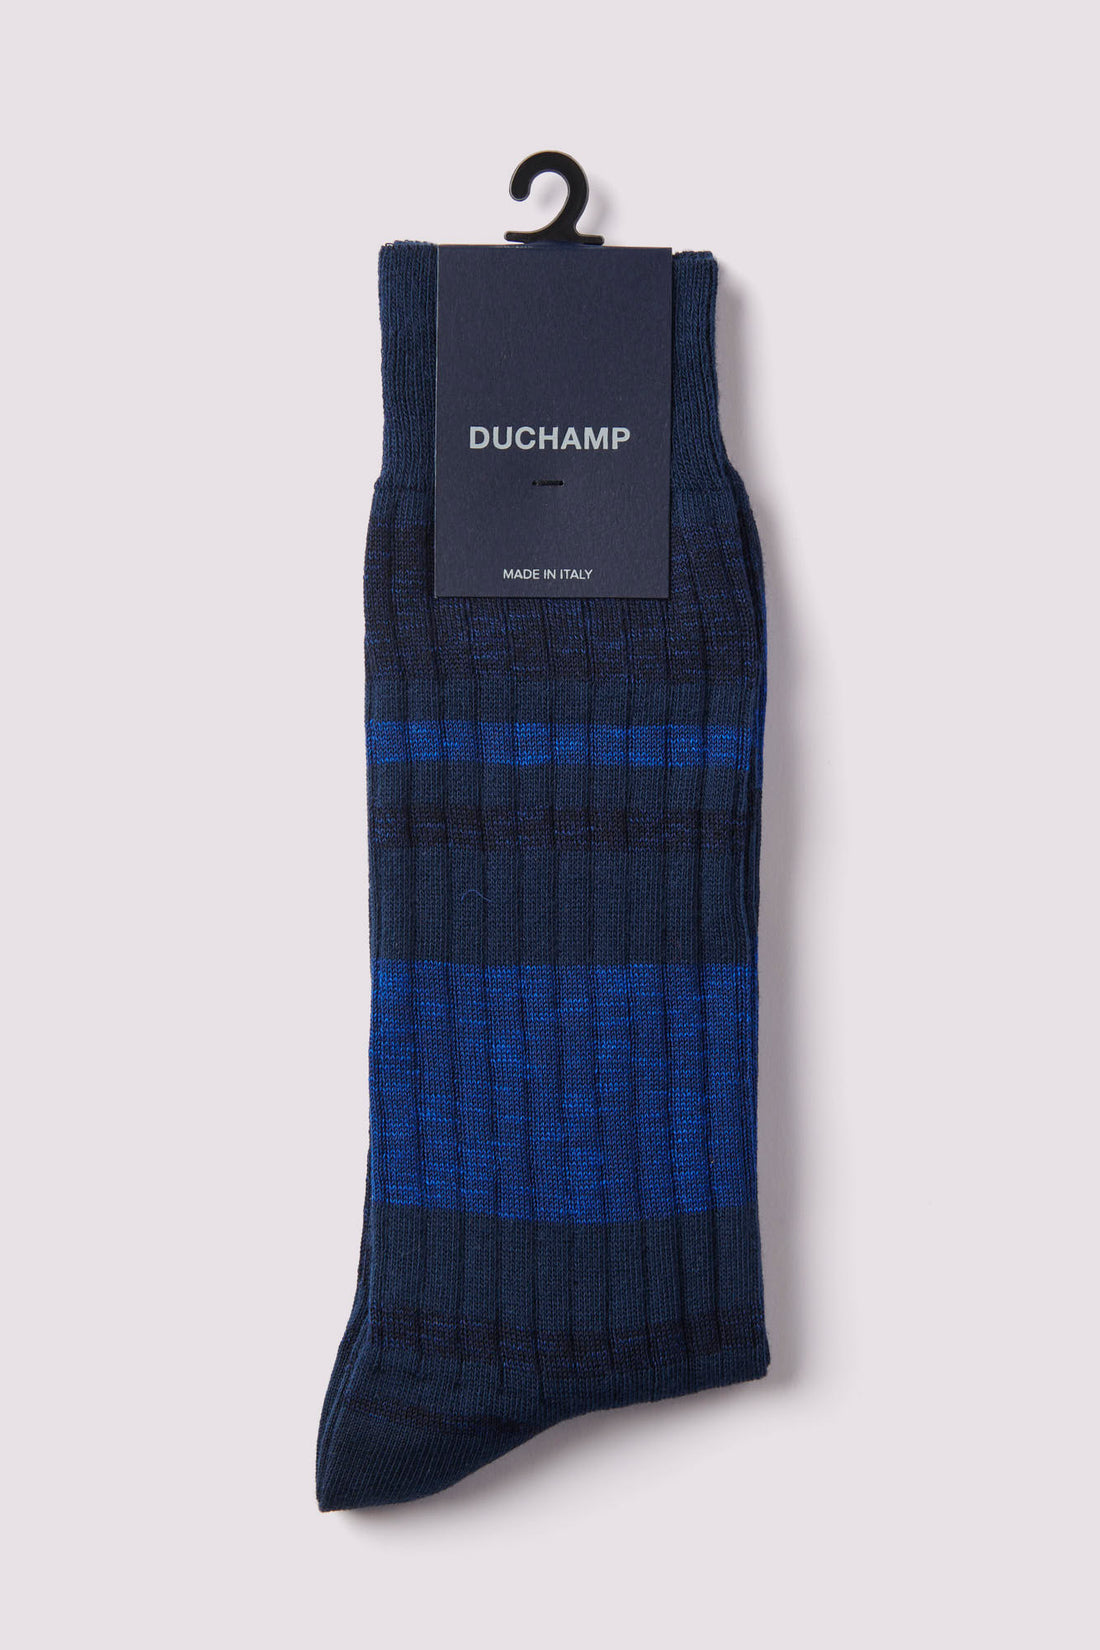 Melange Stripe Socks in Baritone Blue